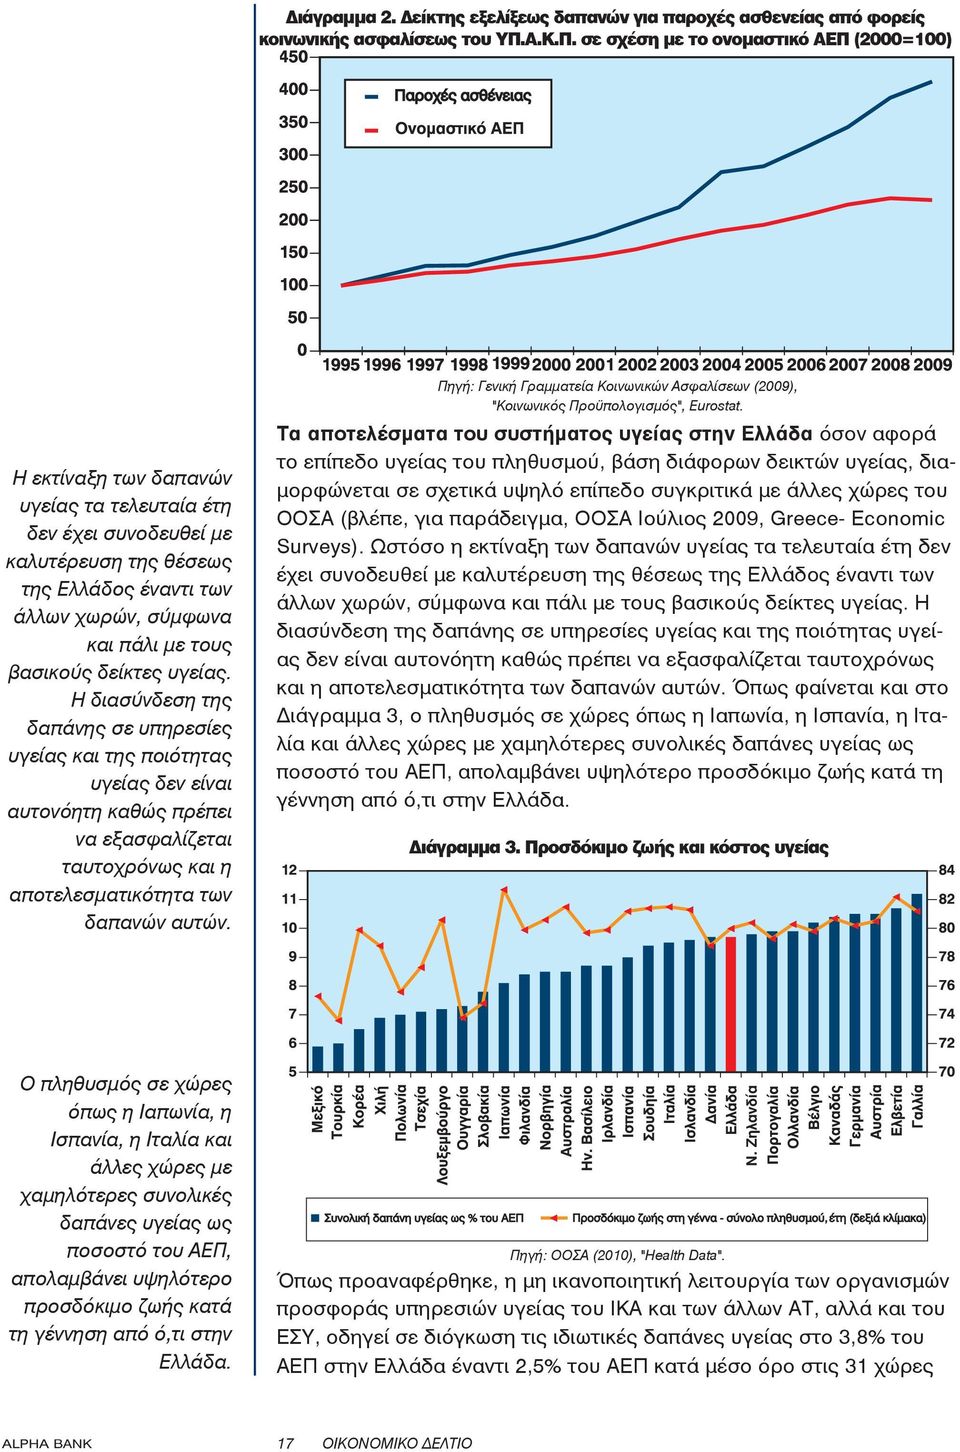 σε σχέση με το ονομαστικό ΑΕΠ (2000=100) Η εκτίναξη των δαπανών υγείας τα τελευταία έτη δεν έχει συνοδευθεί με καλυτέρευση της θέσεως της Ελλάδος έναντι των άλλων χωρών, σύμφωνα και πάλι με τους